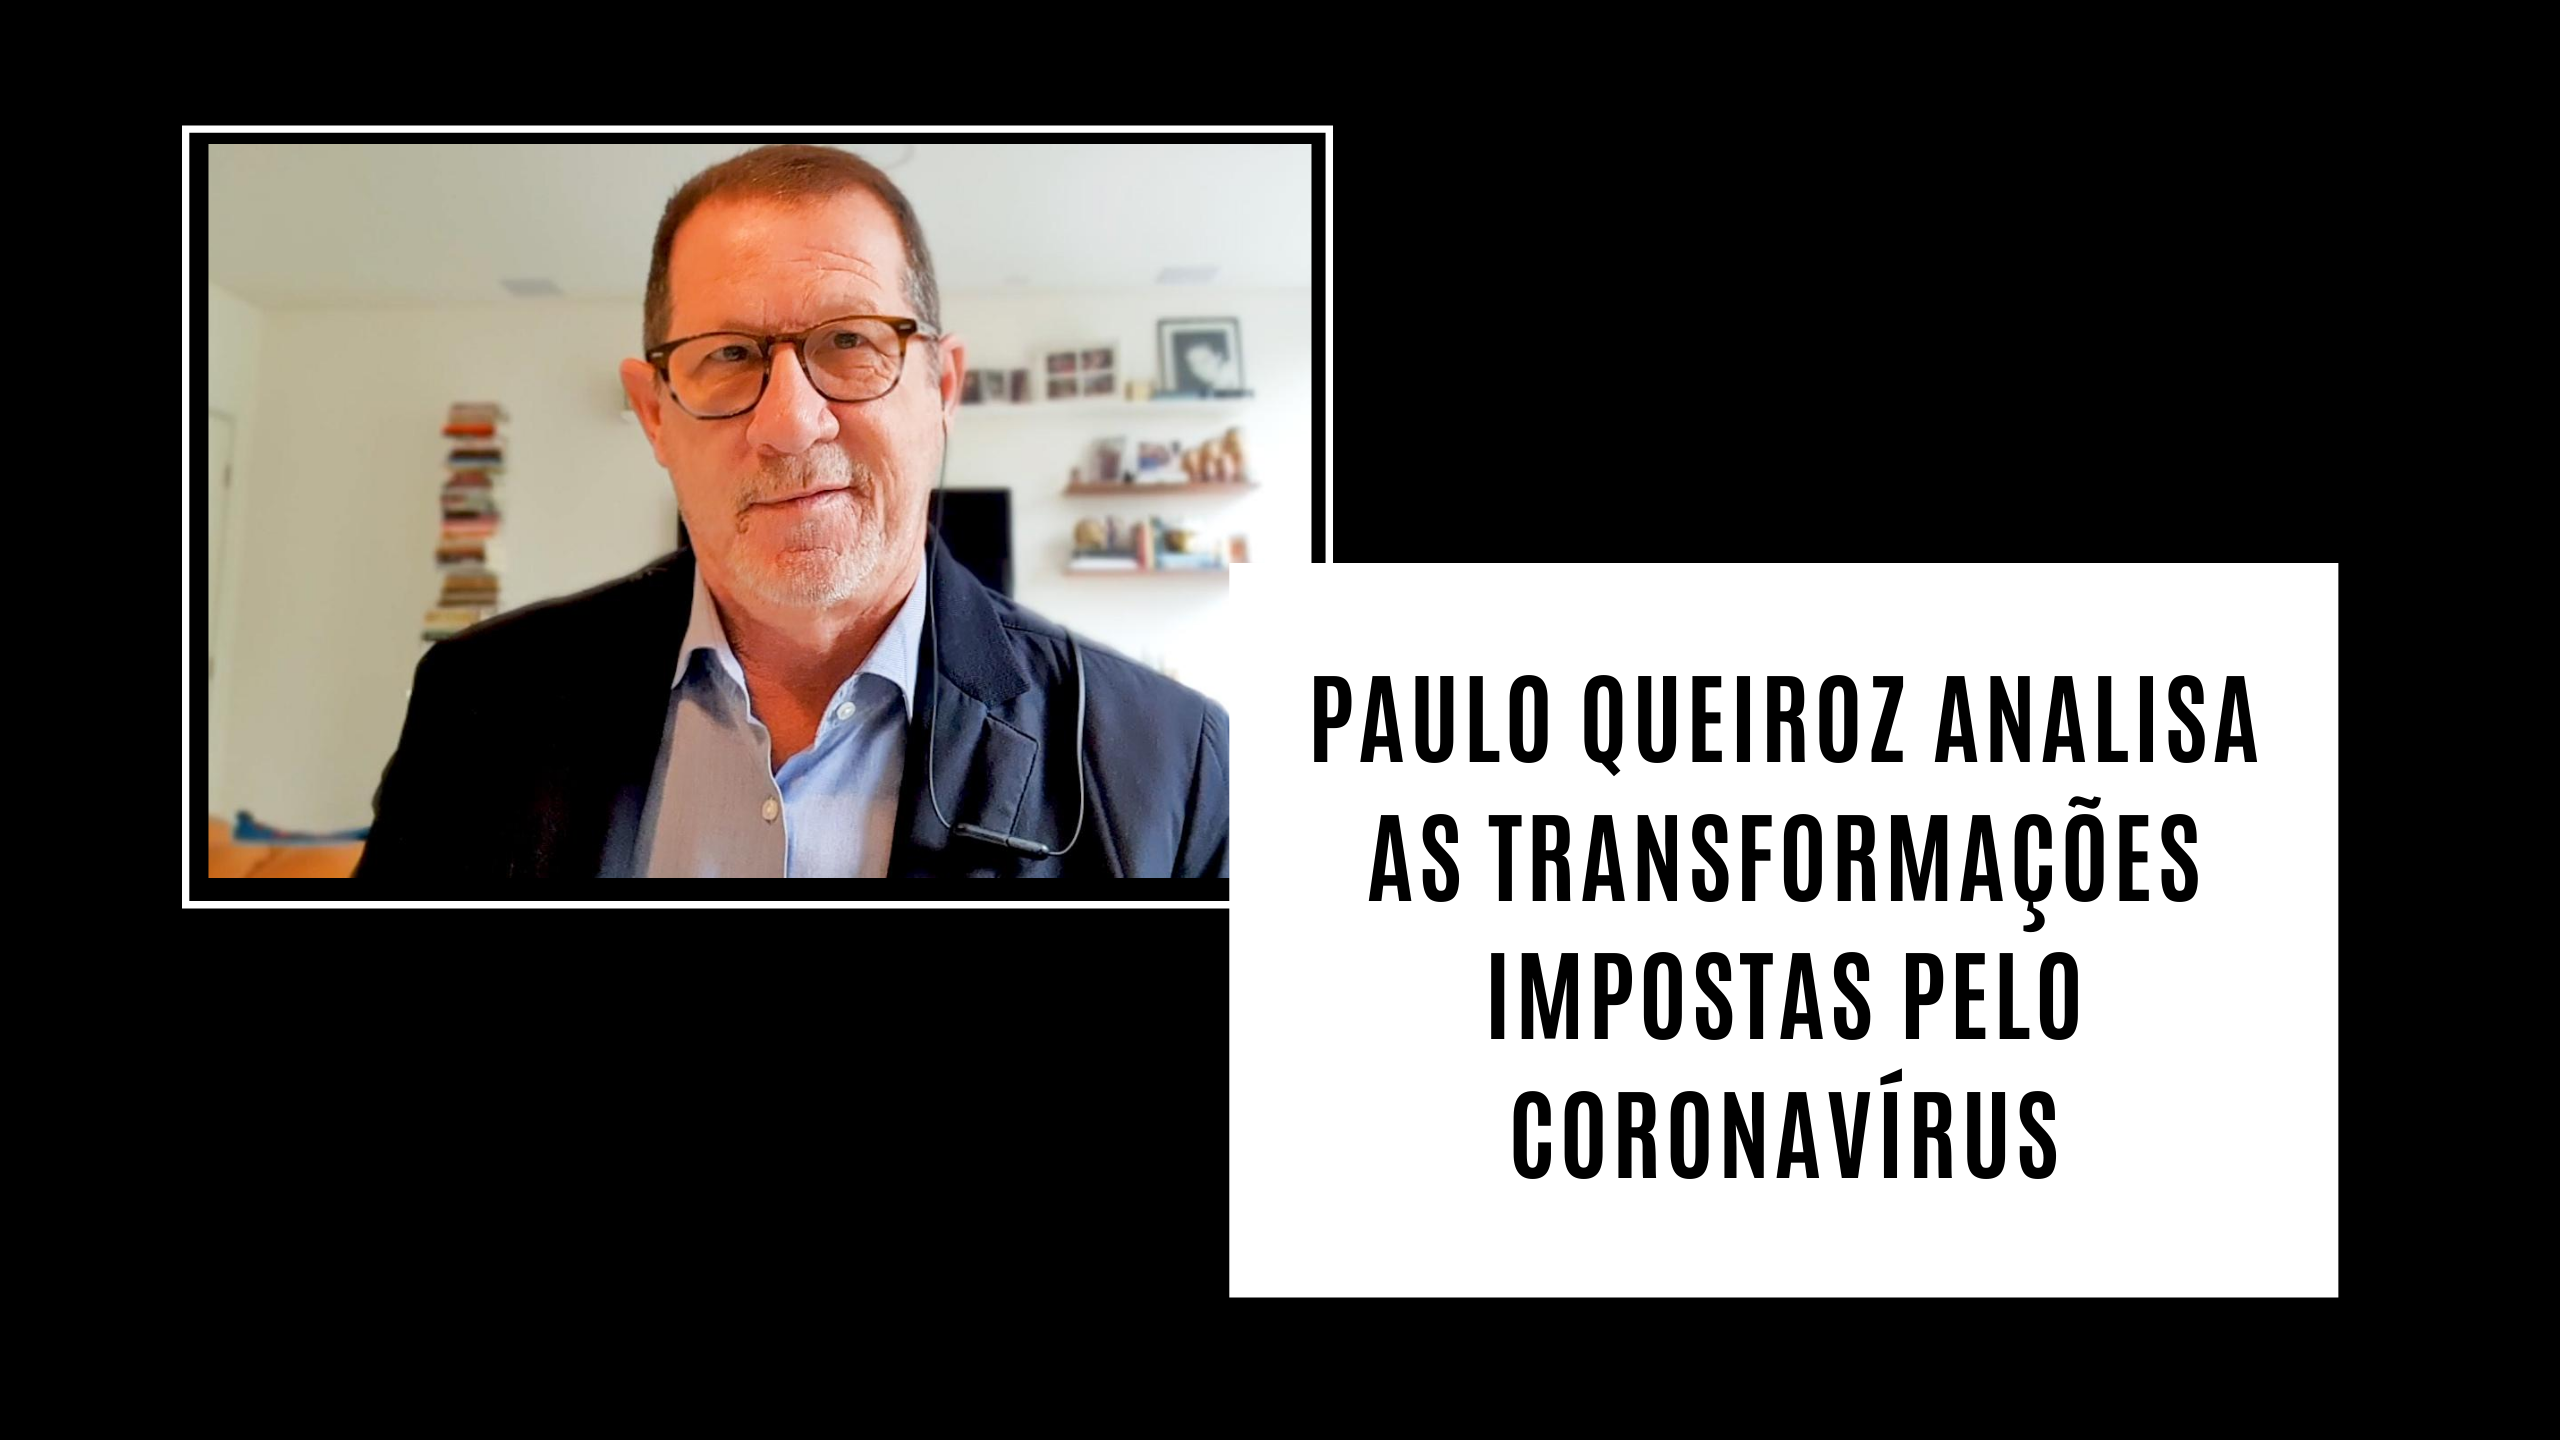 Paulo Queiroz analisa as transformações impostas pelo coronavírus